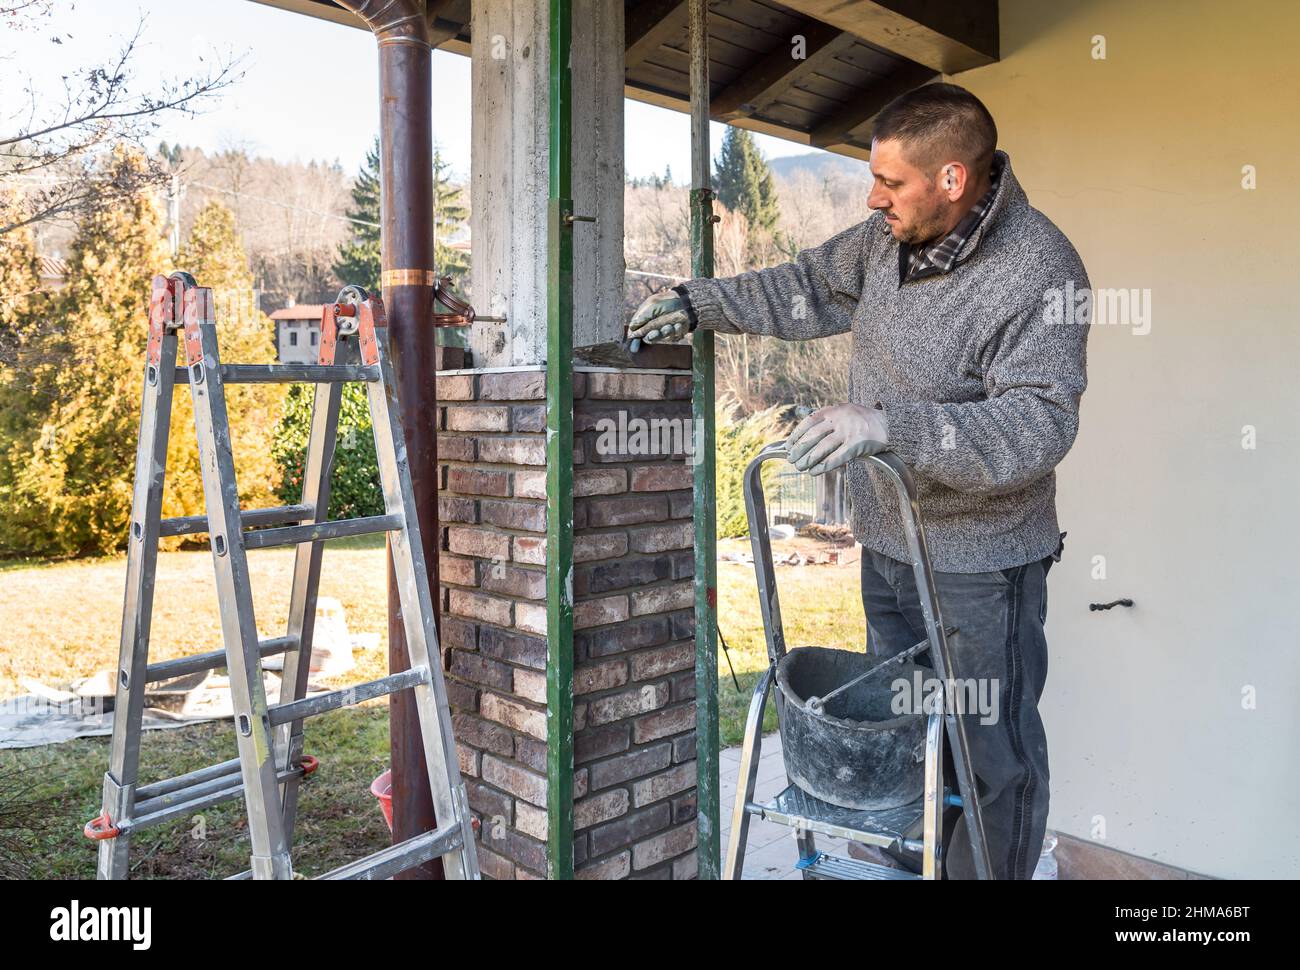 Trabajador de bricklayer instalando ladrillos en el pilar exterior de hormigón de la casa. El trabajador de la construcción que pone ladrillos. Foto de stock